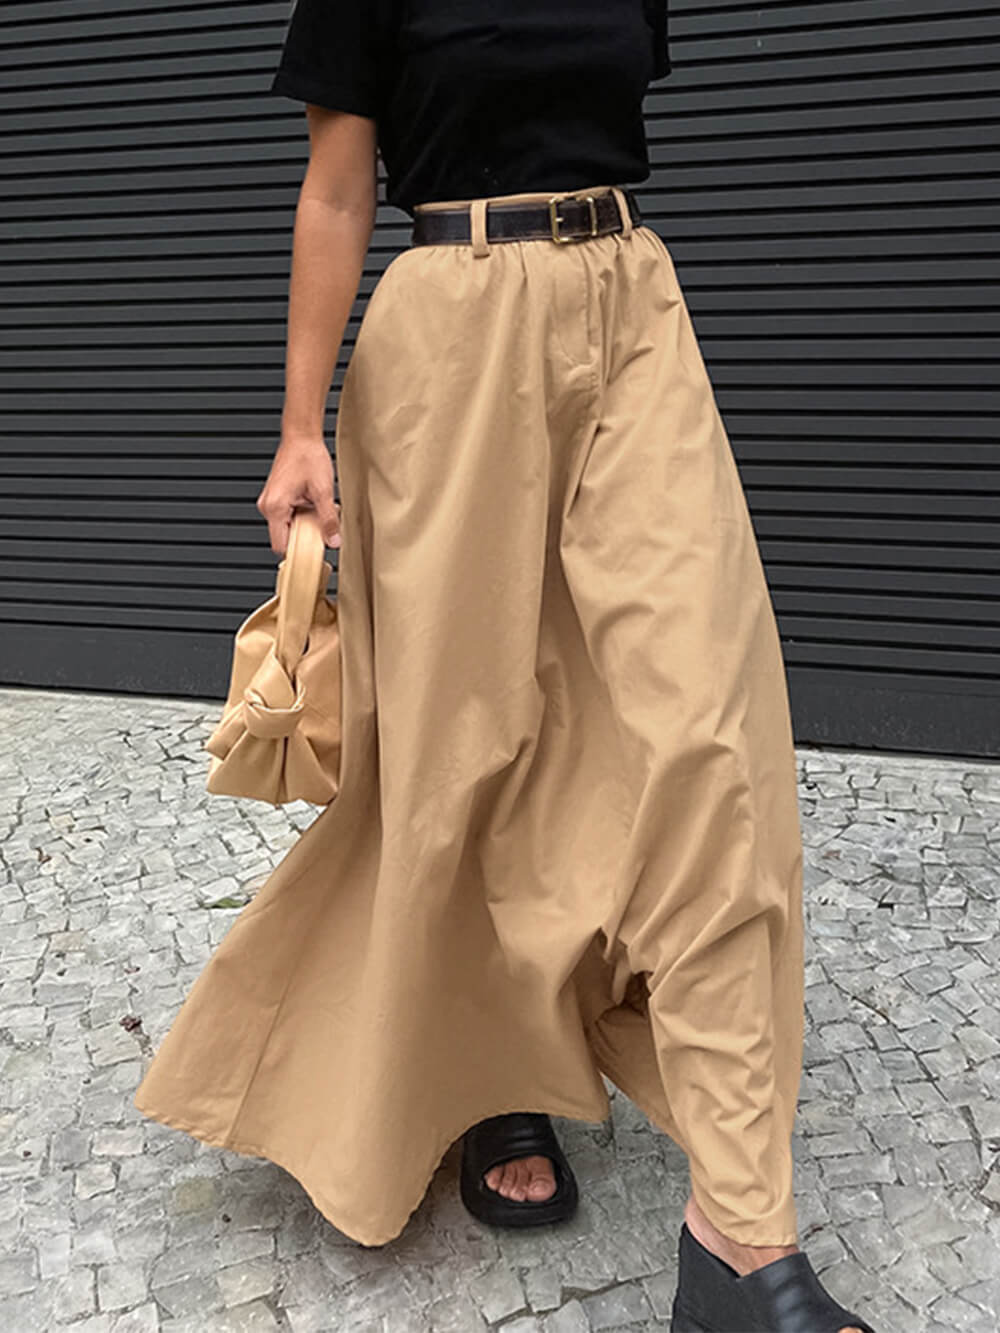 Volná dlouhá sukně přizpůsobená street stylu